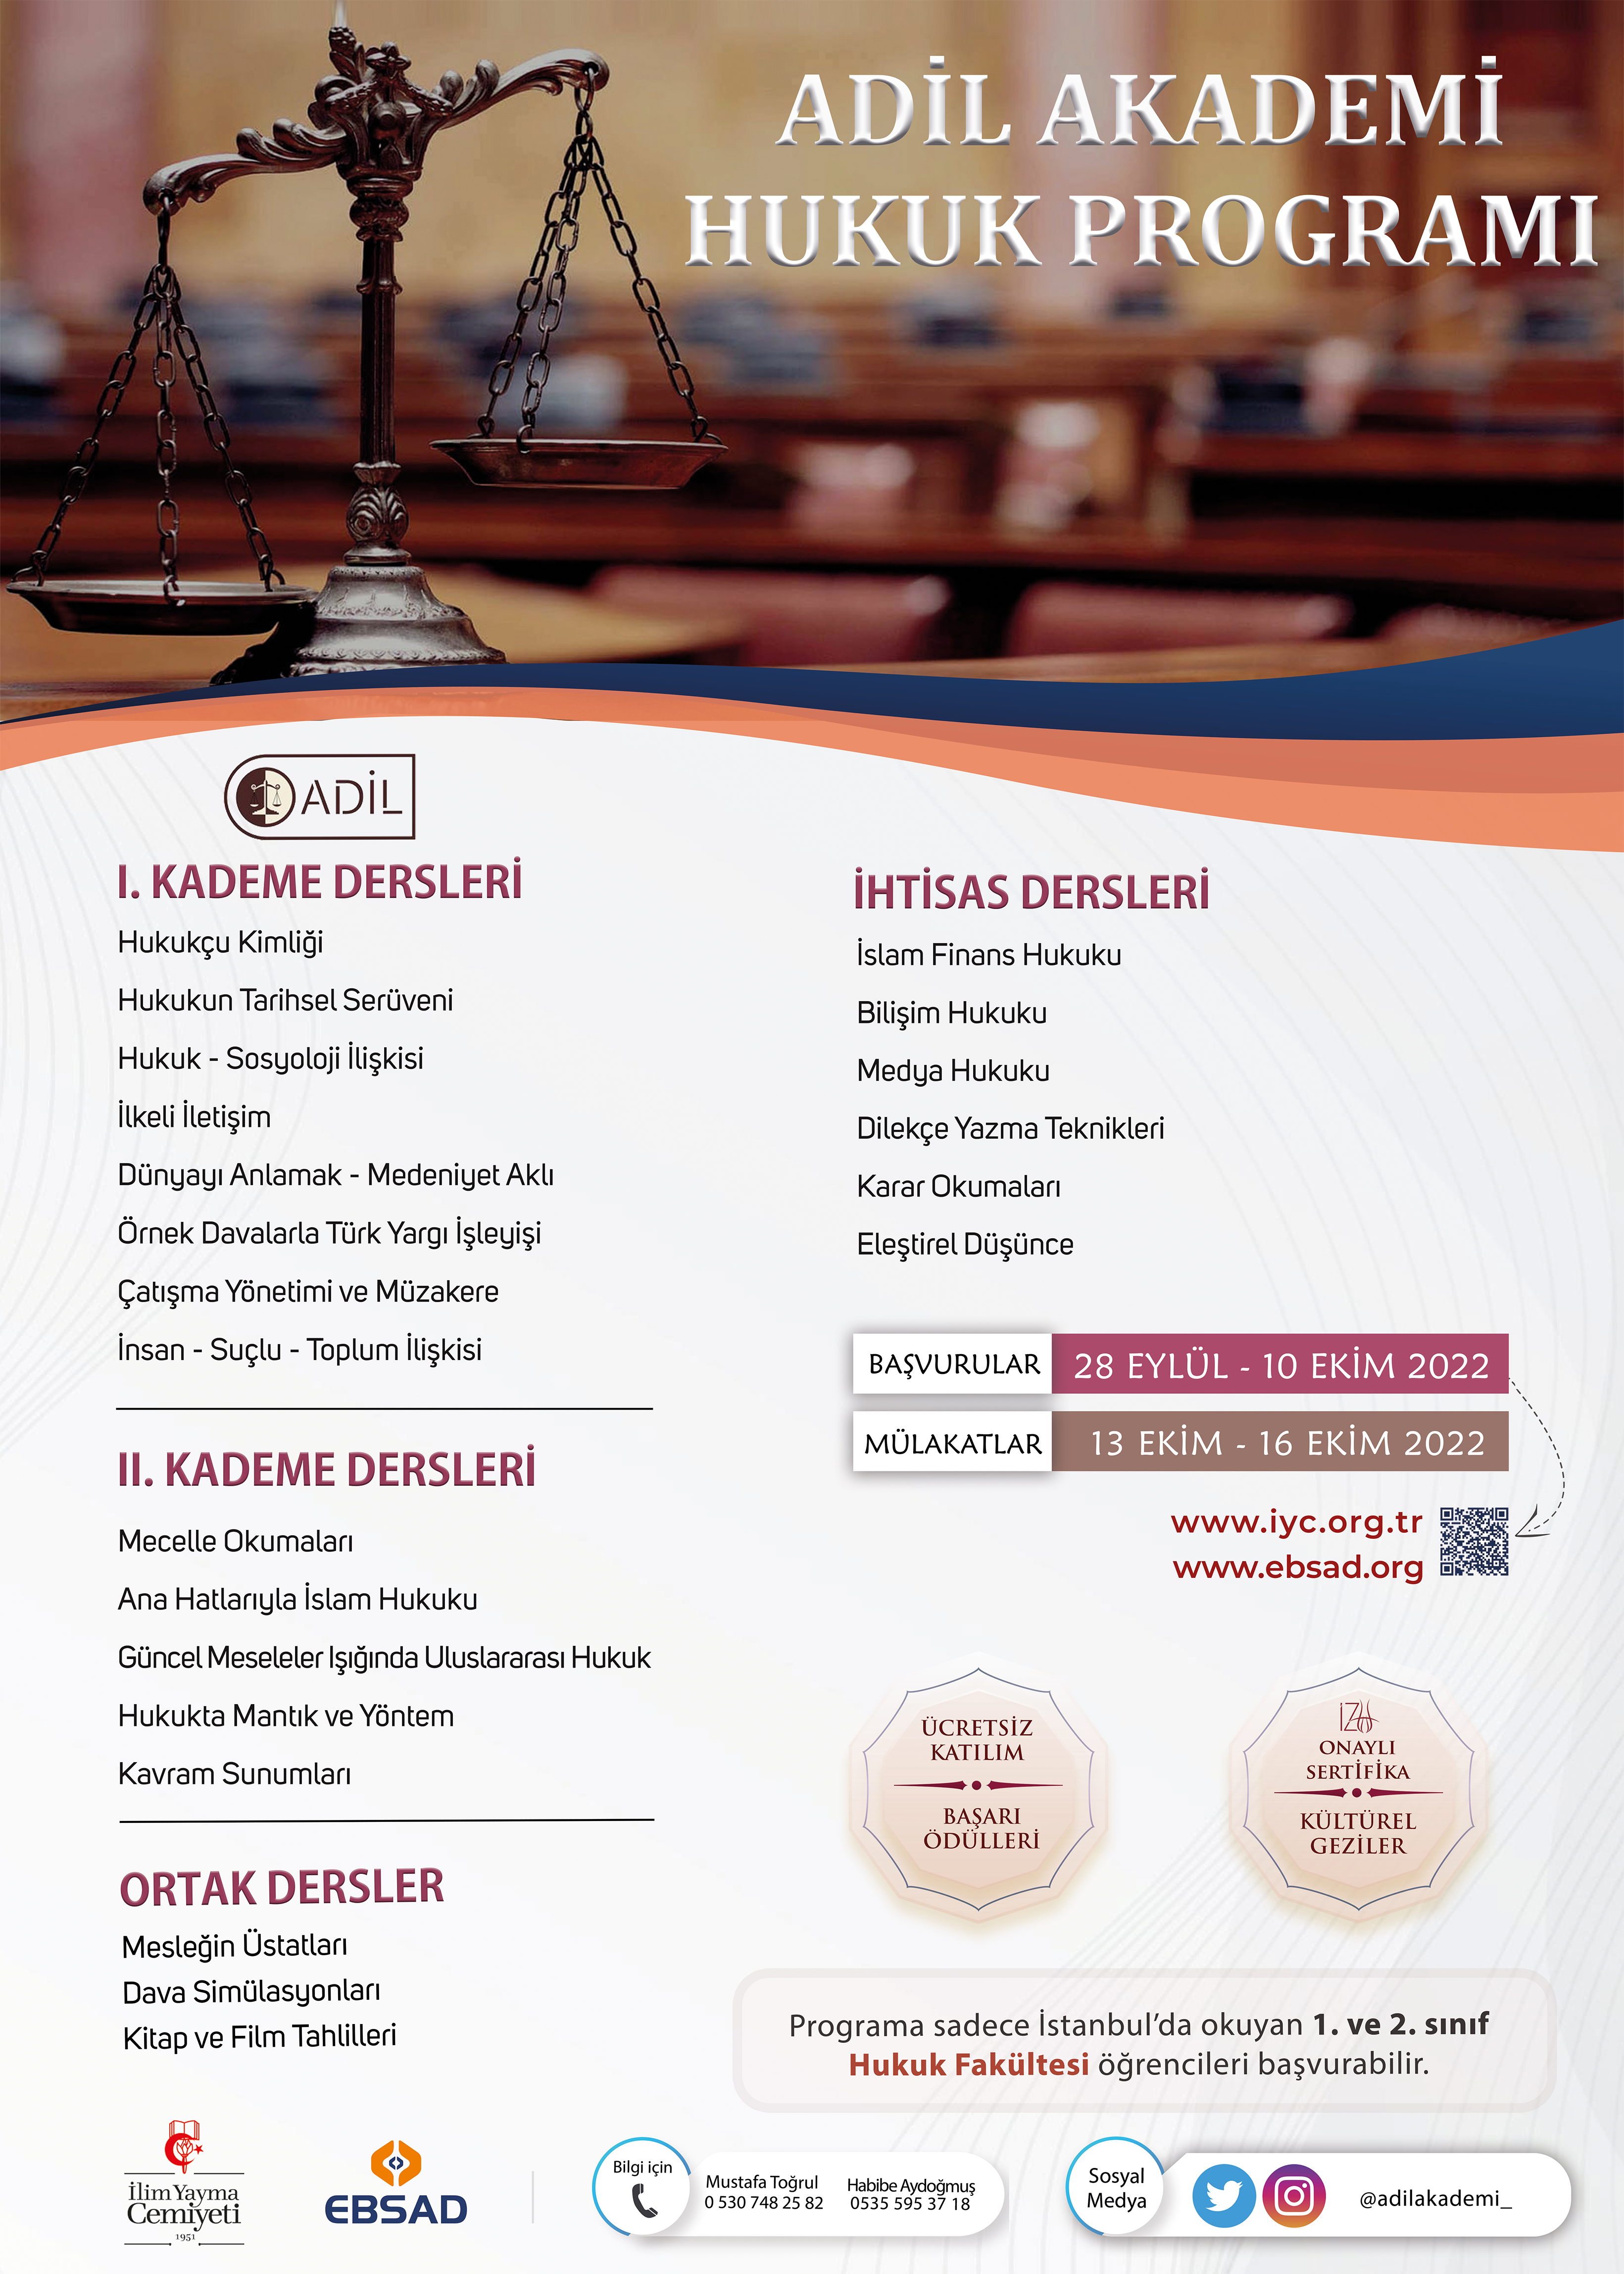 ADİL Akademi Hukuk Programı - Ebsad - Eğitim Bilimleri ve Sosyal Araştırmalar Derneği